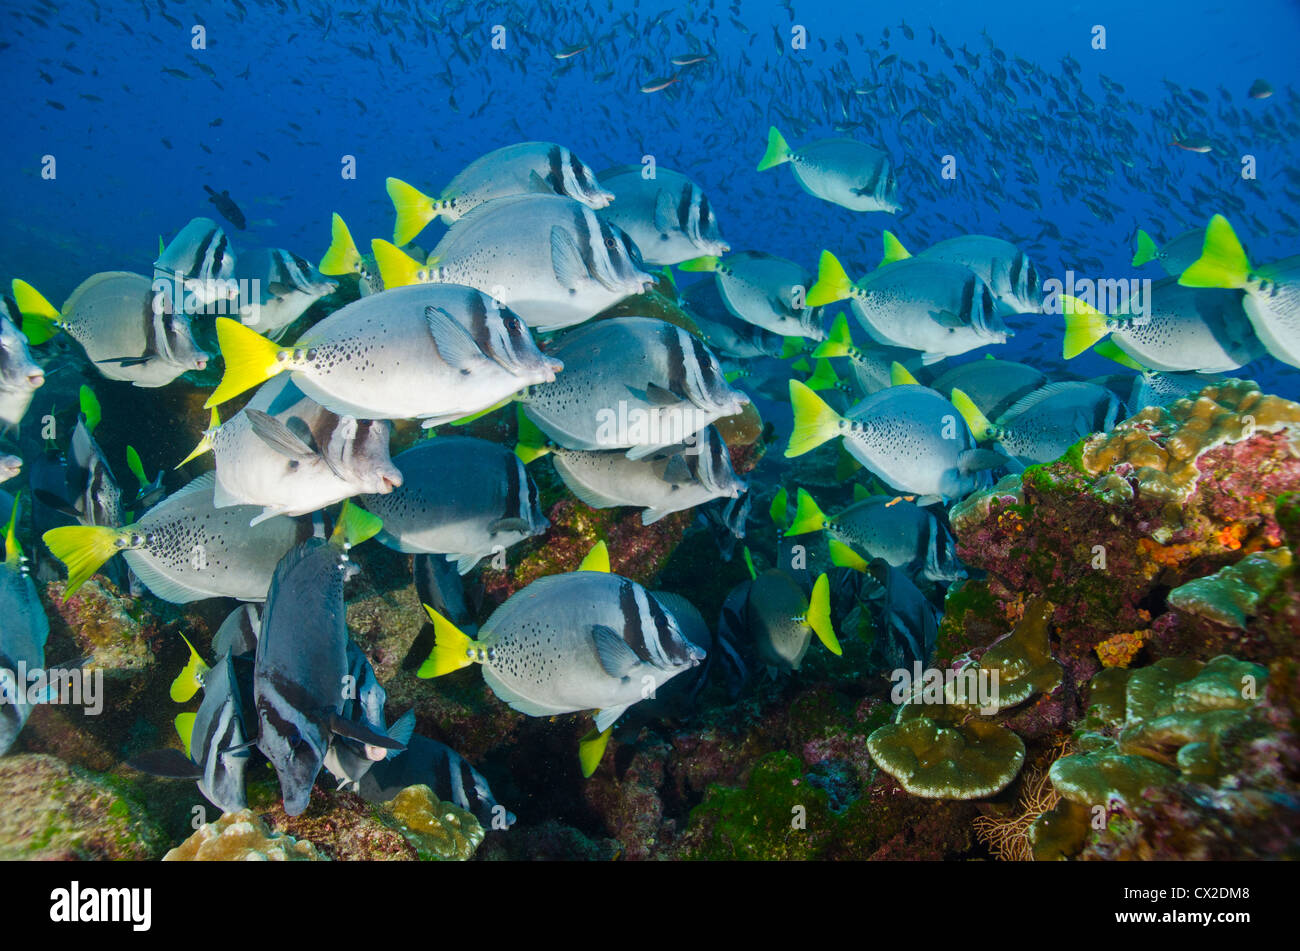 Arrecifes sumergidos en la Isla del Coco, Costa Rica, el pescado, la escuela de peces, comunidad, familia, sociedad, peces cirujano, buceo Foto de stock